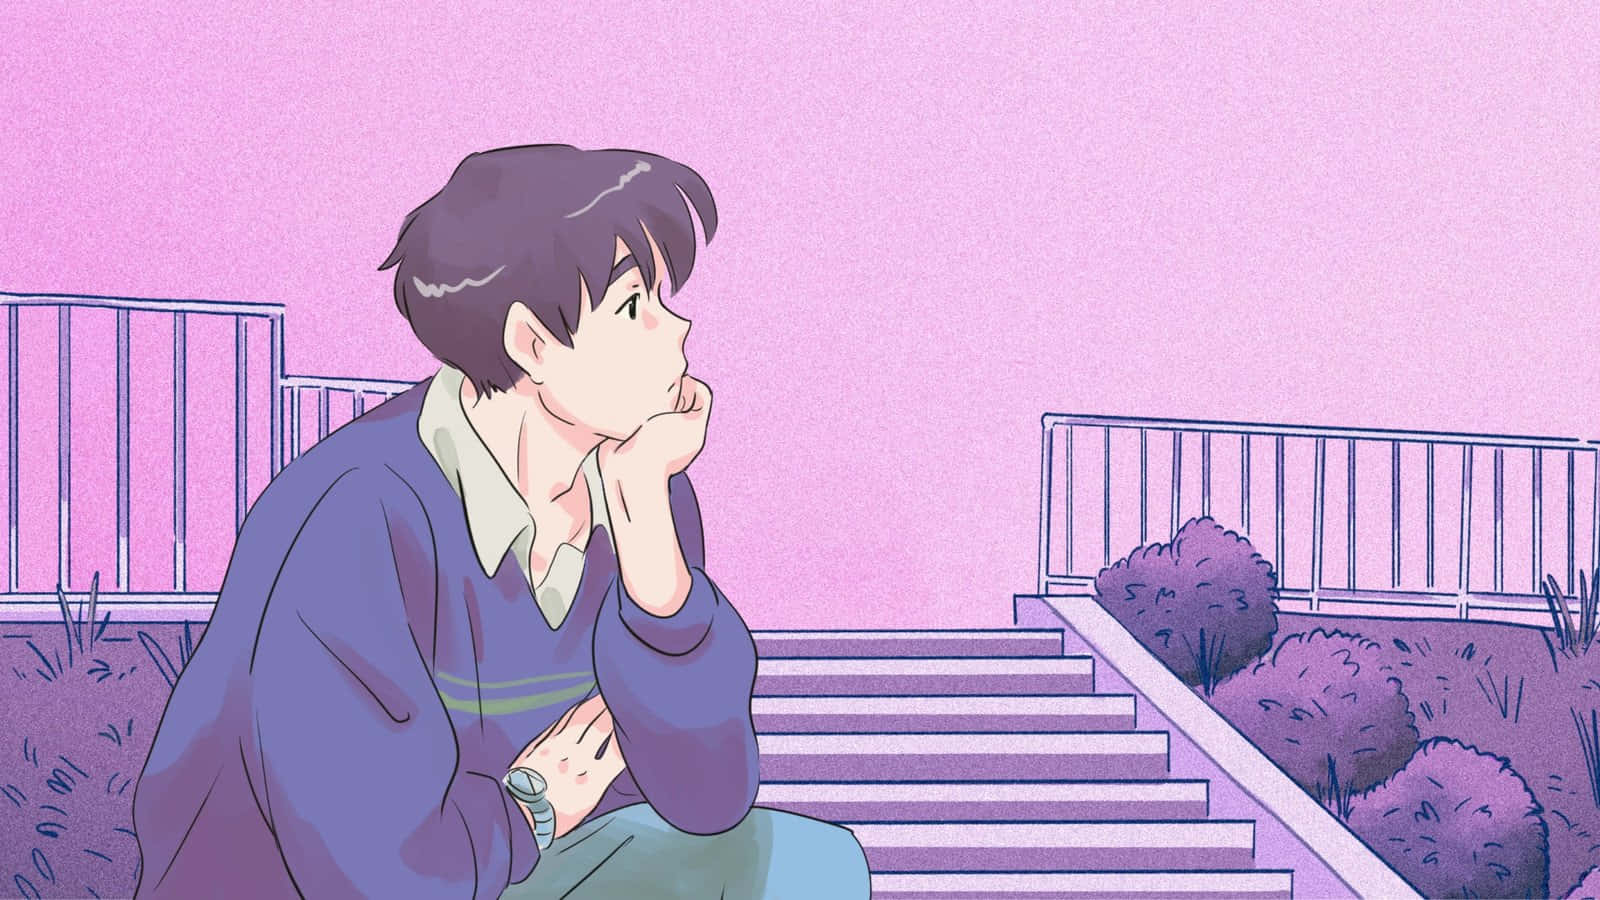 Nydet Fredeligt Øjeblik Omgivet Af En Smuk Æstetisk Lyserød Anime-baggrund.